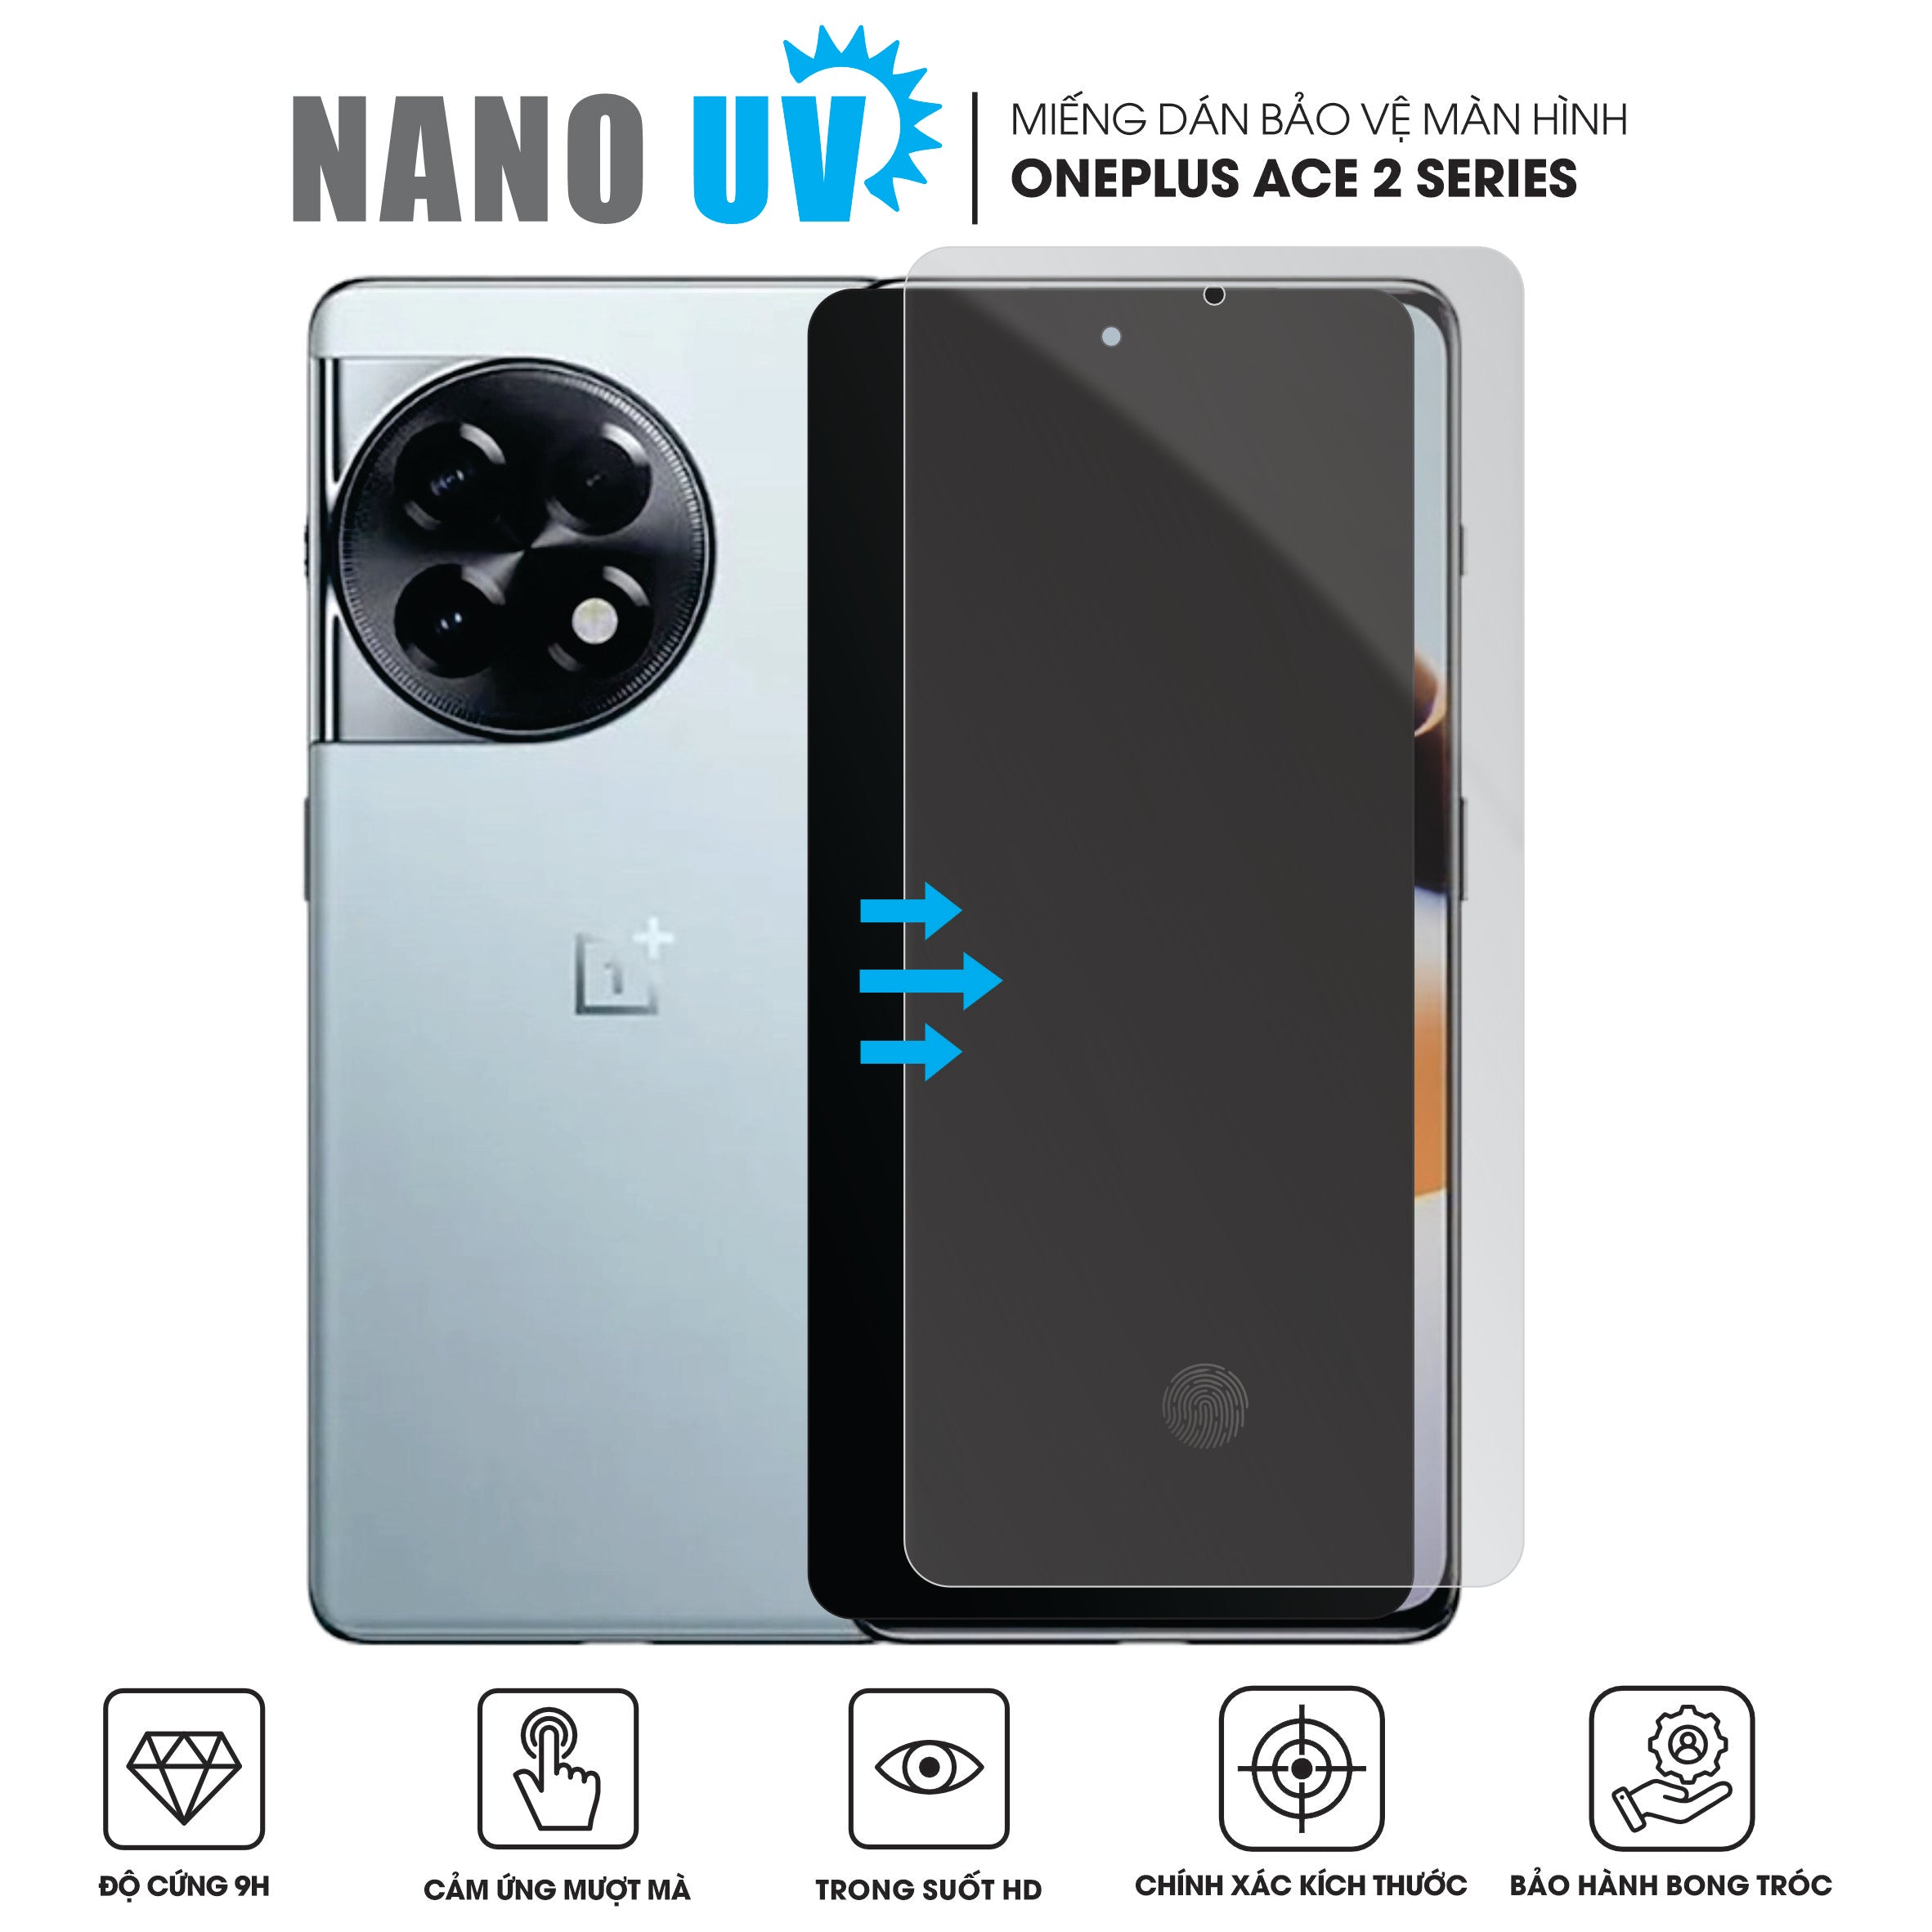 Miếng dán màn hình OnePlus 12 công nghệ Nano UV siêu cứng